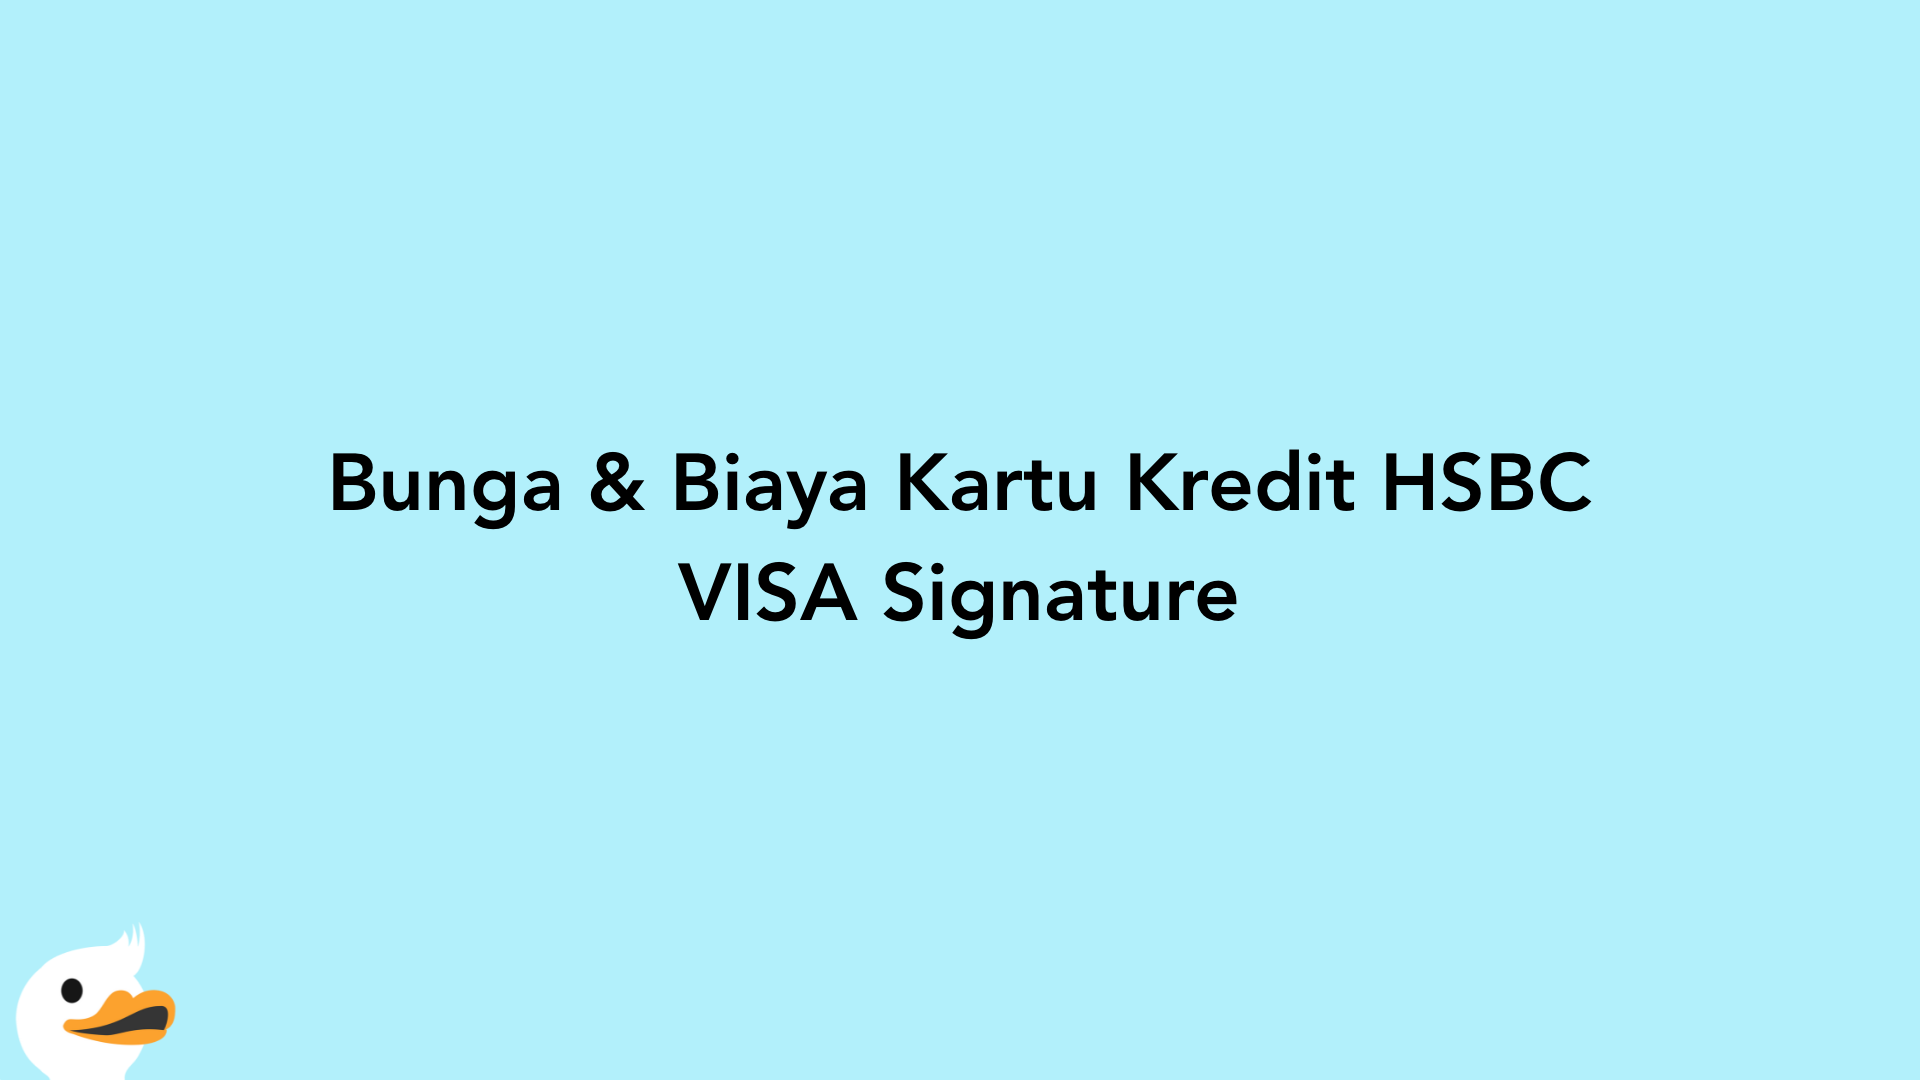 Bunga & Biaya Kartu Kredit HSBC VISA Signature